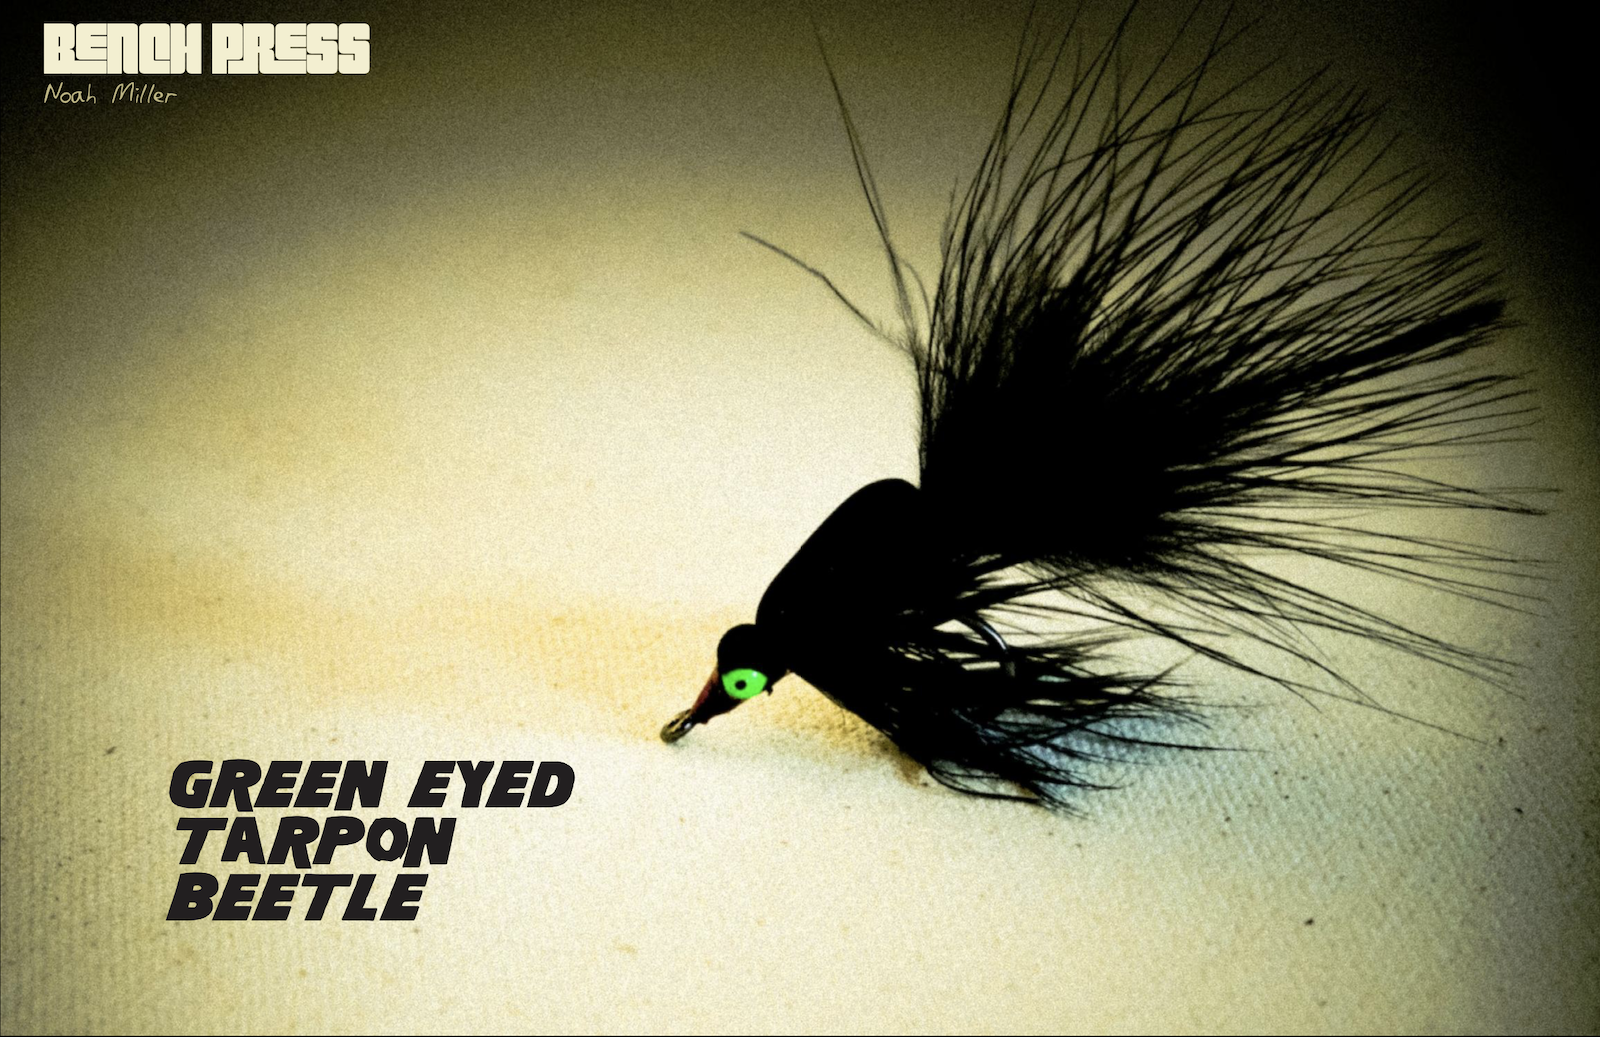 Green-eyed Tarpon Beetle